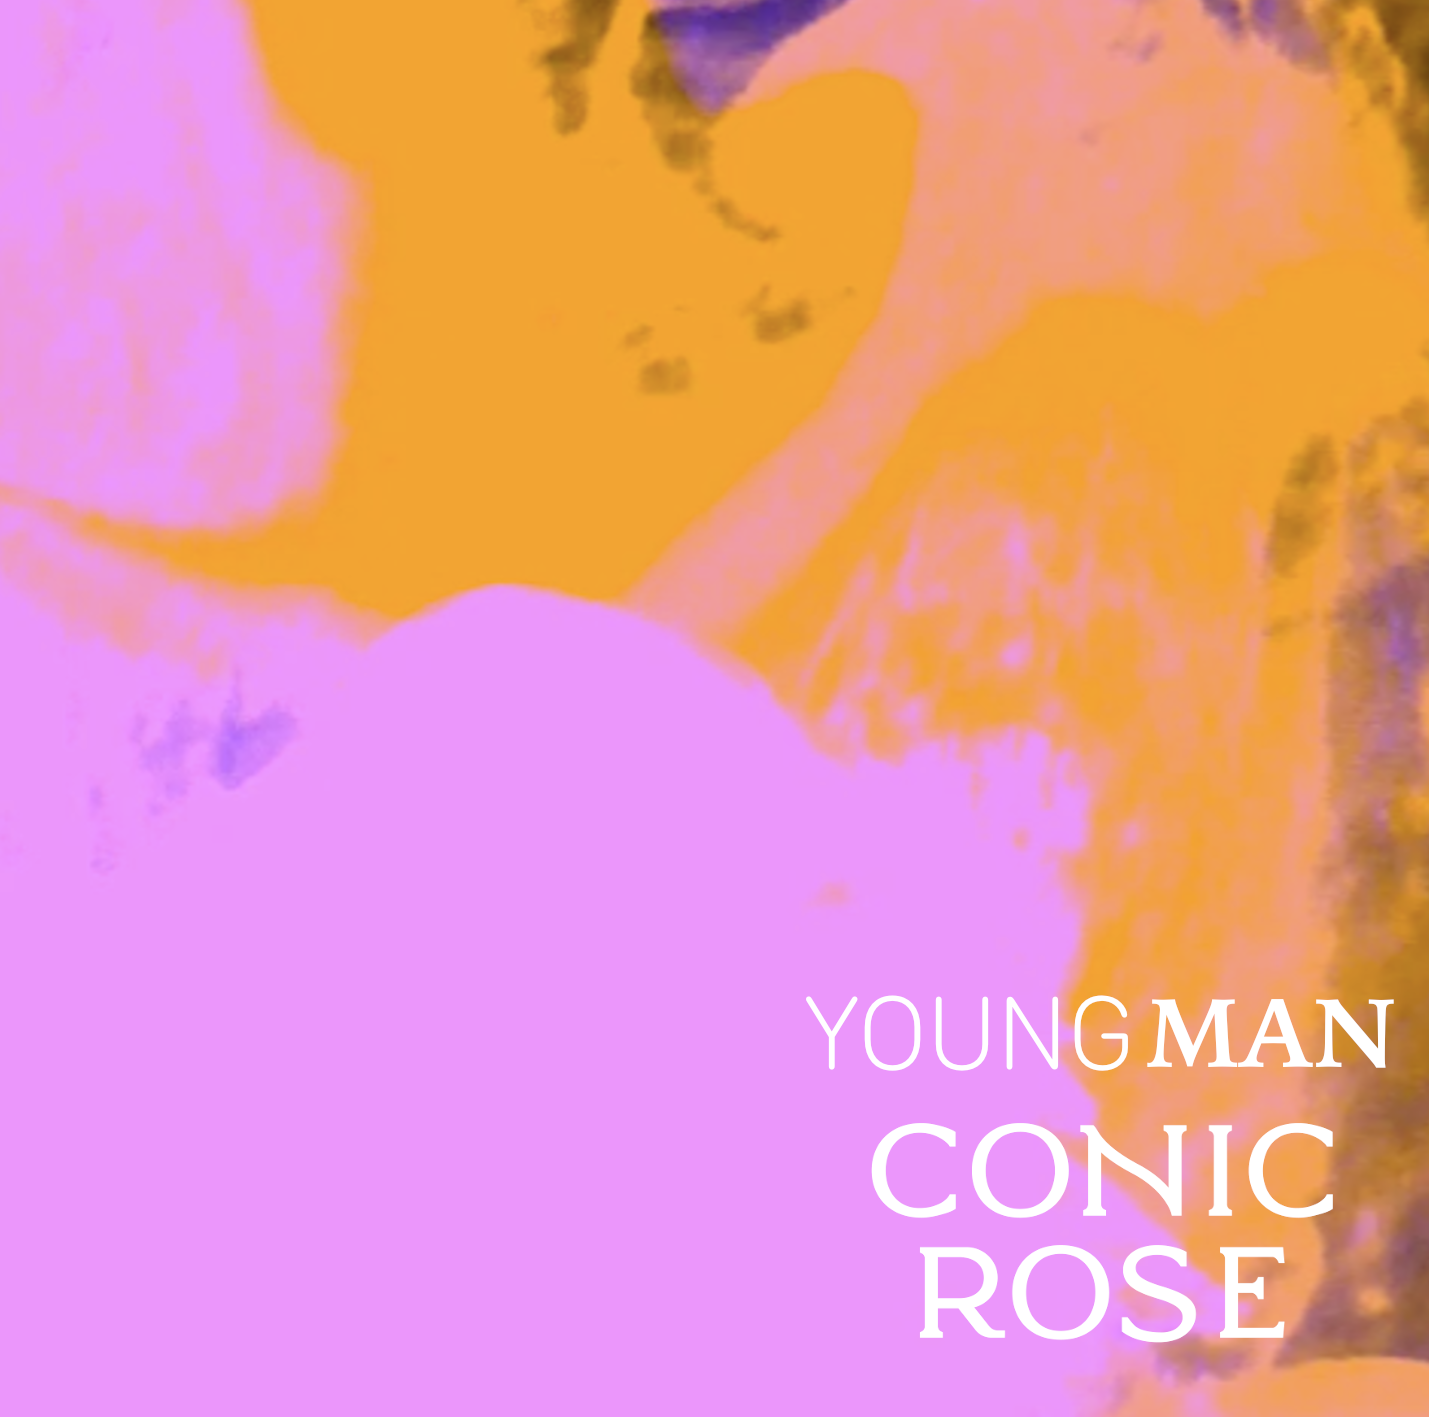 CONIC ROSE Music